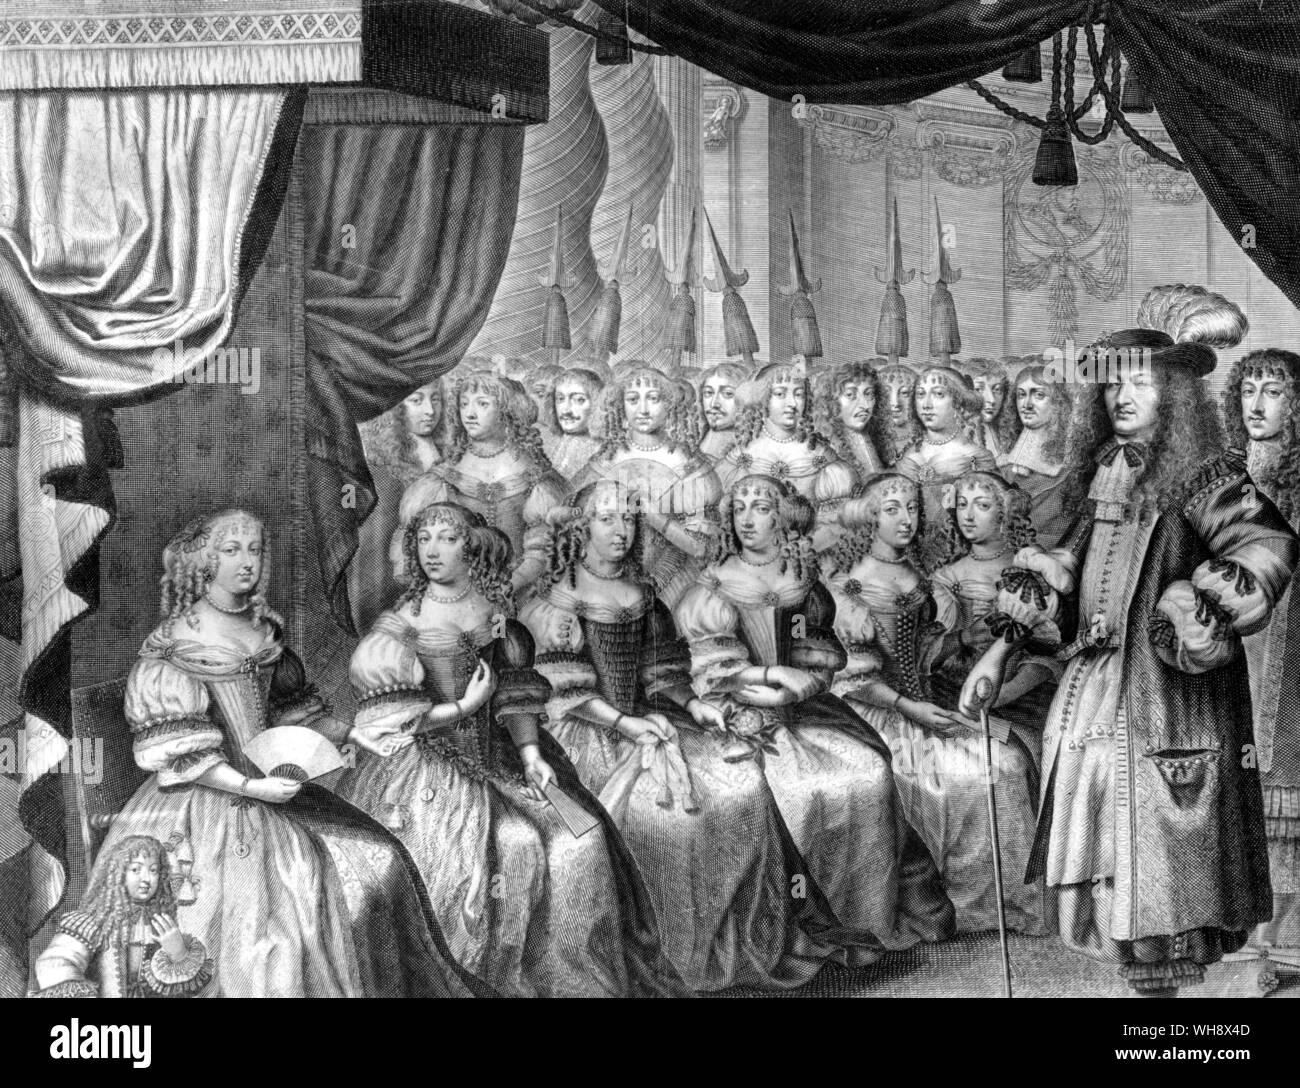 Louis XIV, roi de France, le Roi Soleil, (1638-1715), (règne 1643-1715), parmi les dames de cour. Une gravure de l'Almanach de 1667. Le Roi Soleil par Nancy Mitford, page 27. Banque D'Images